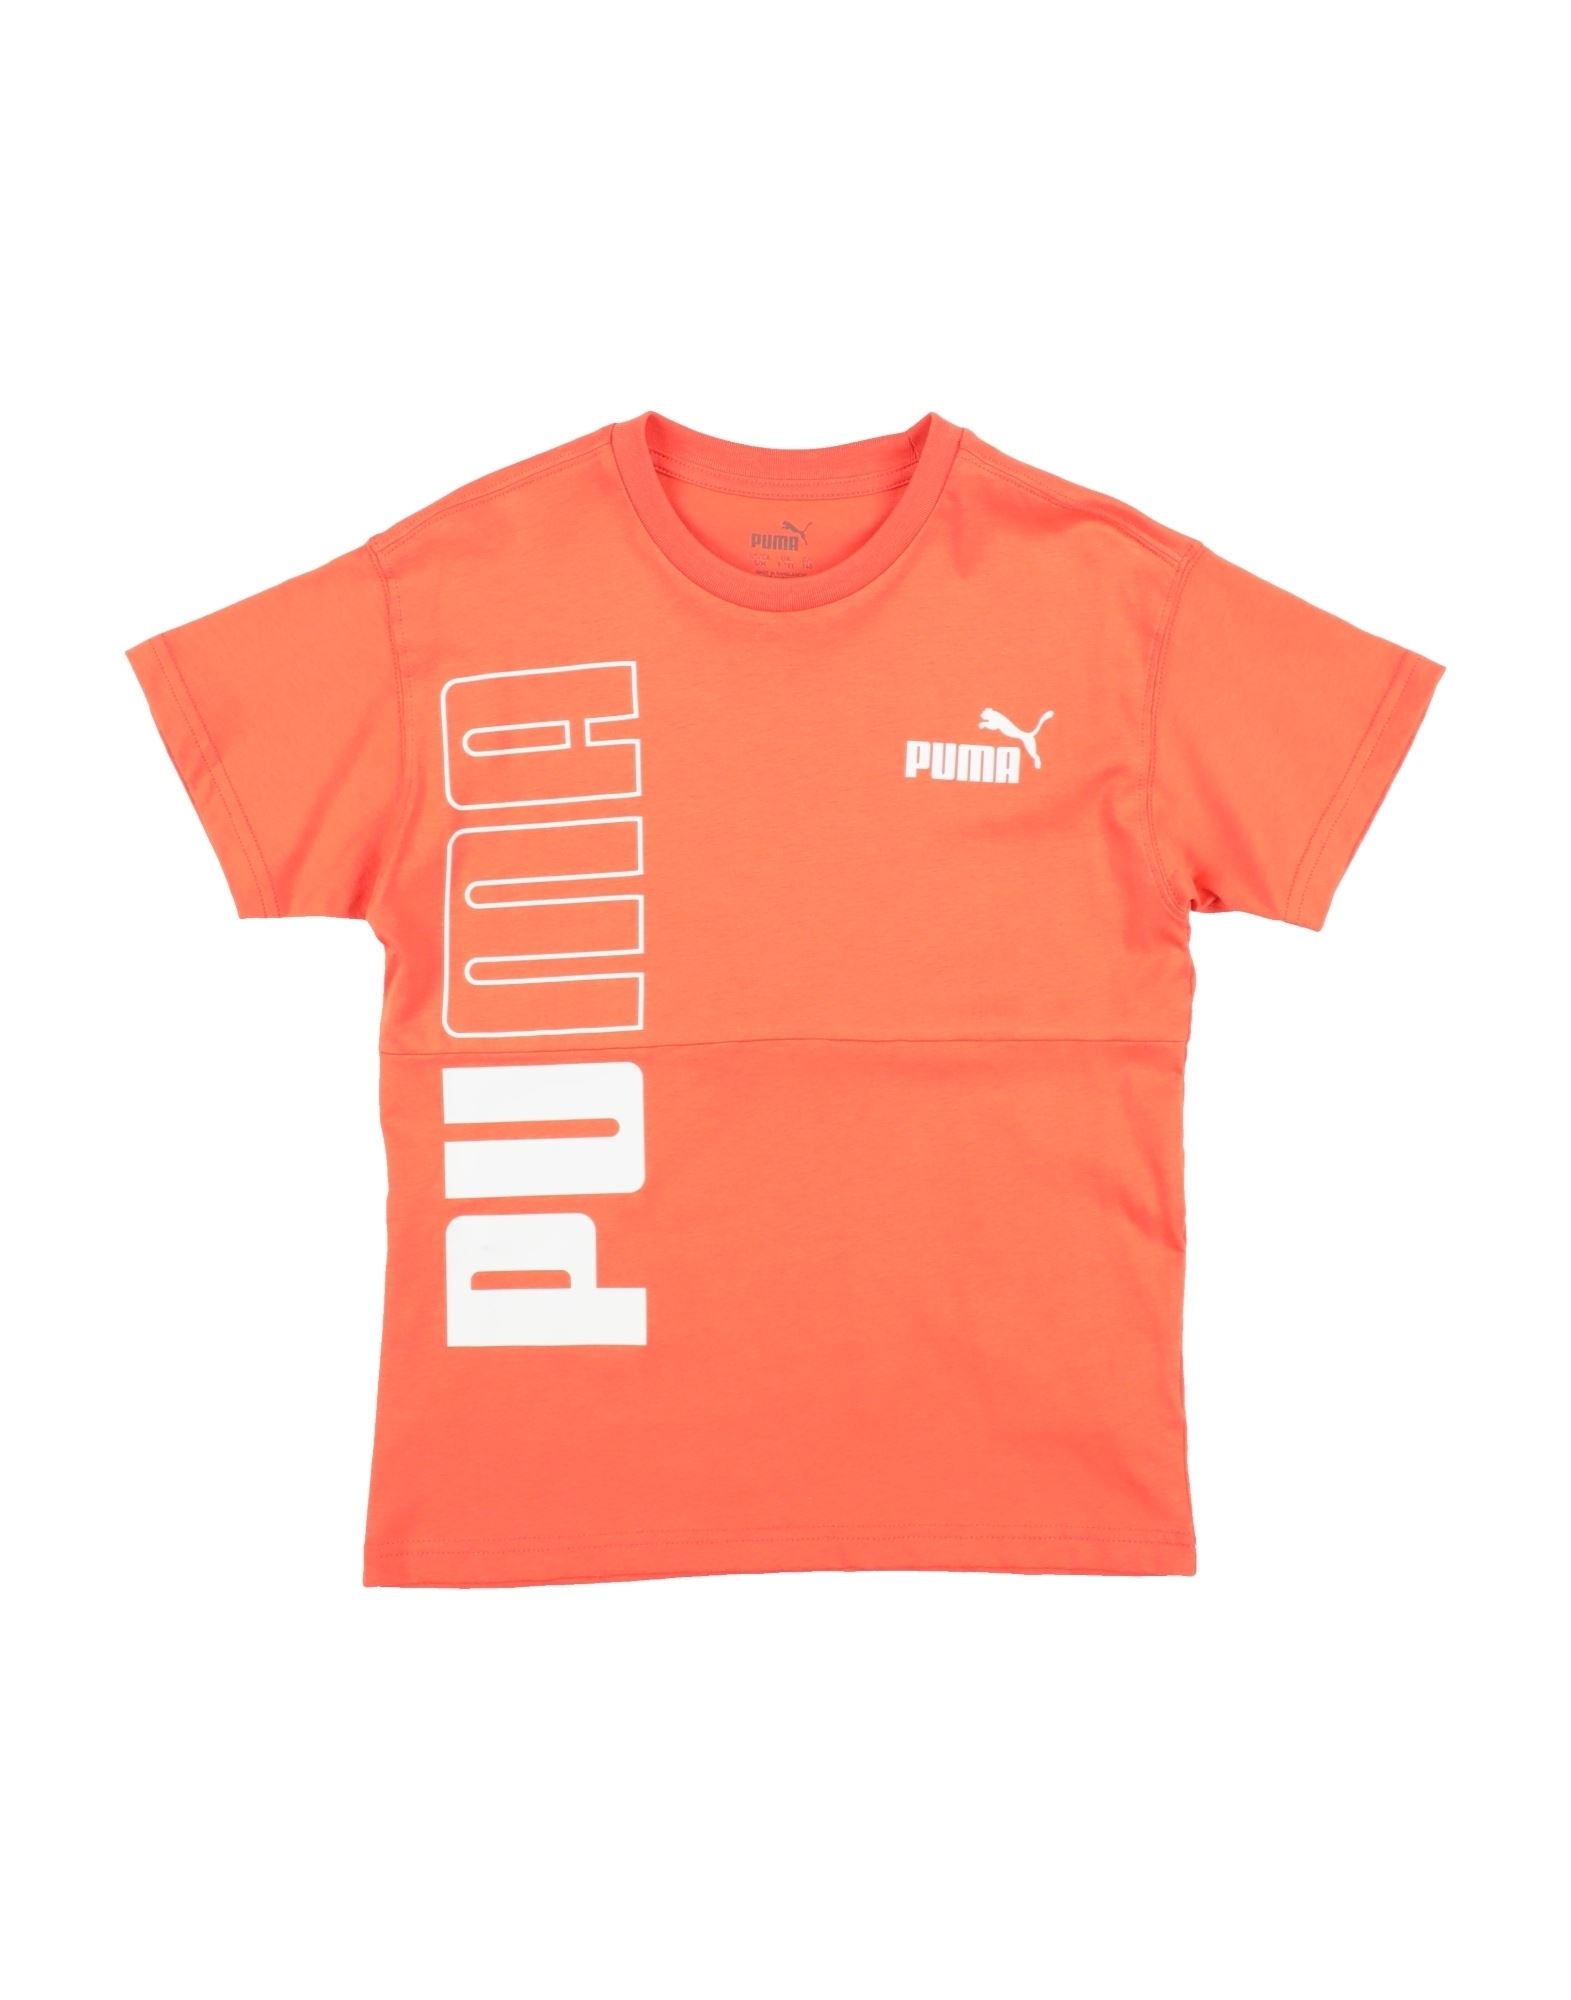 PUMA T-shirts Kinder Orange von PUMA